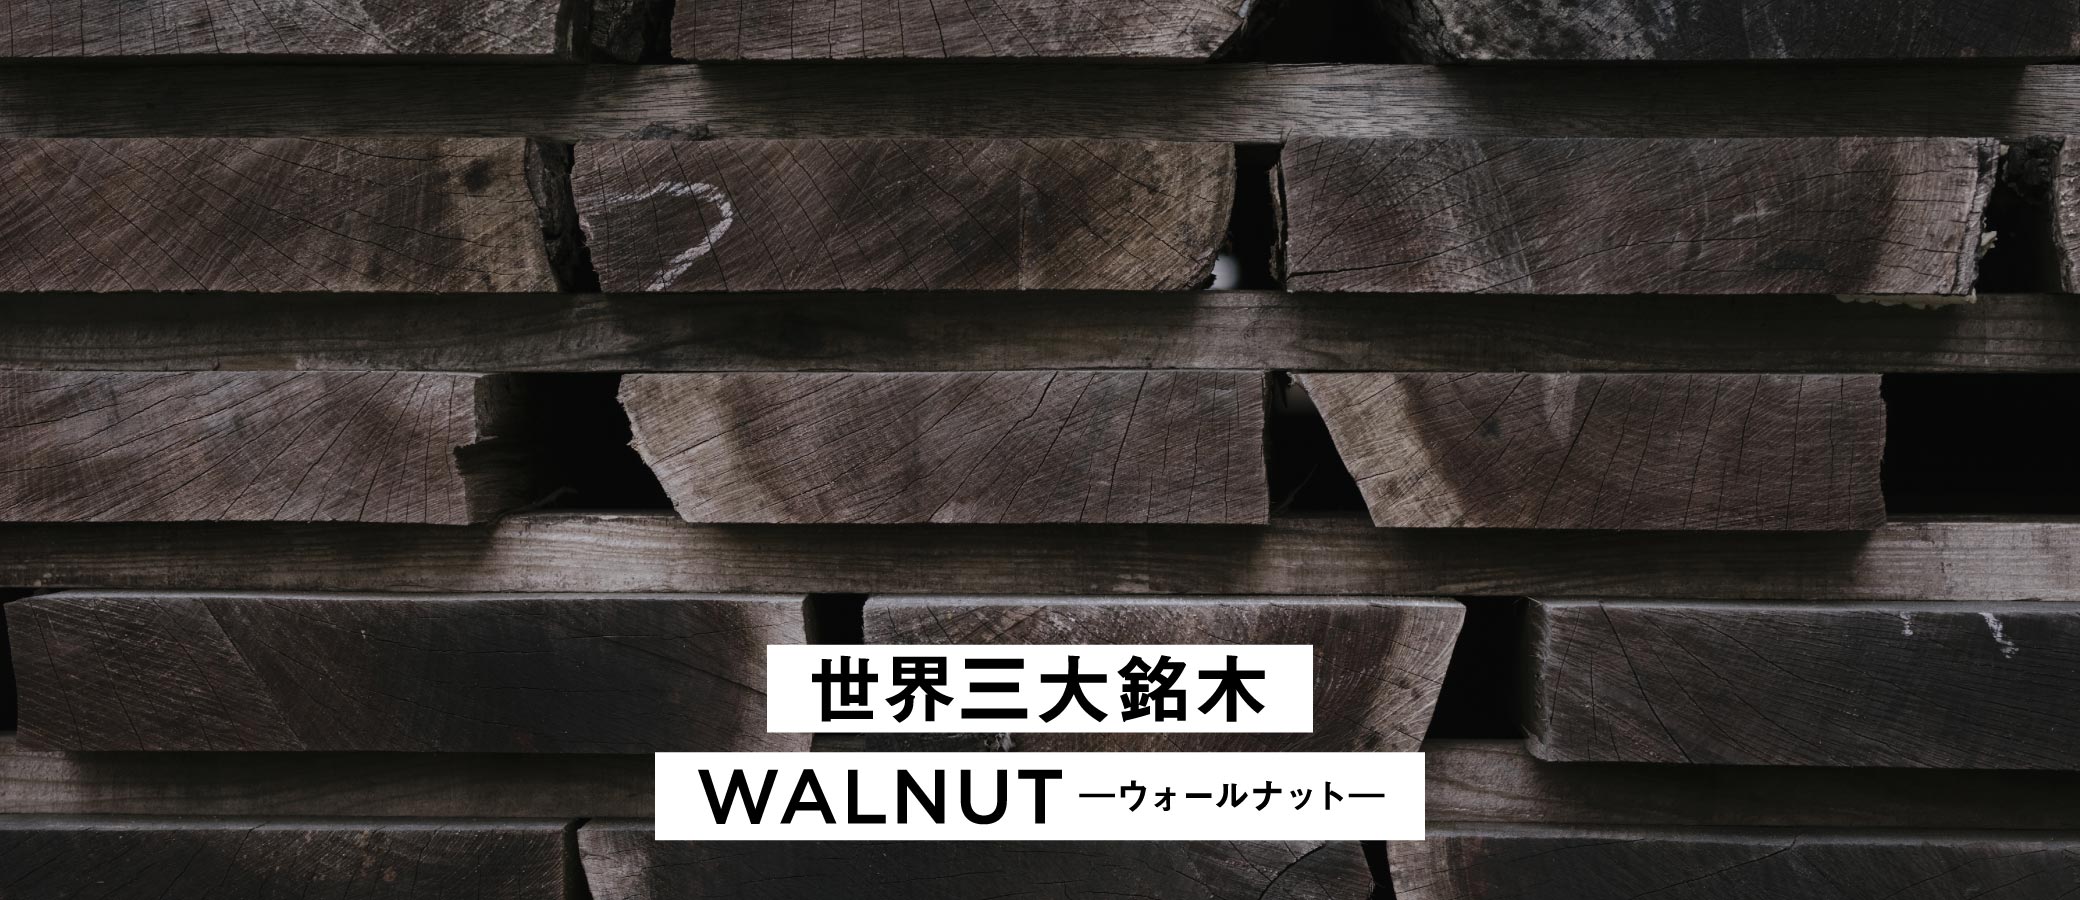 世界三大銘木の一つであり、SOLIDを代表する木材であるウォールナット。お手入れをしながら永くお使いいただけます。